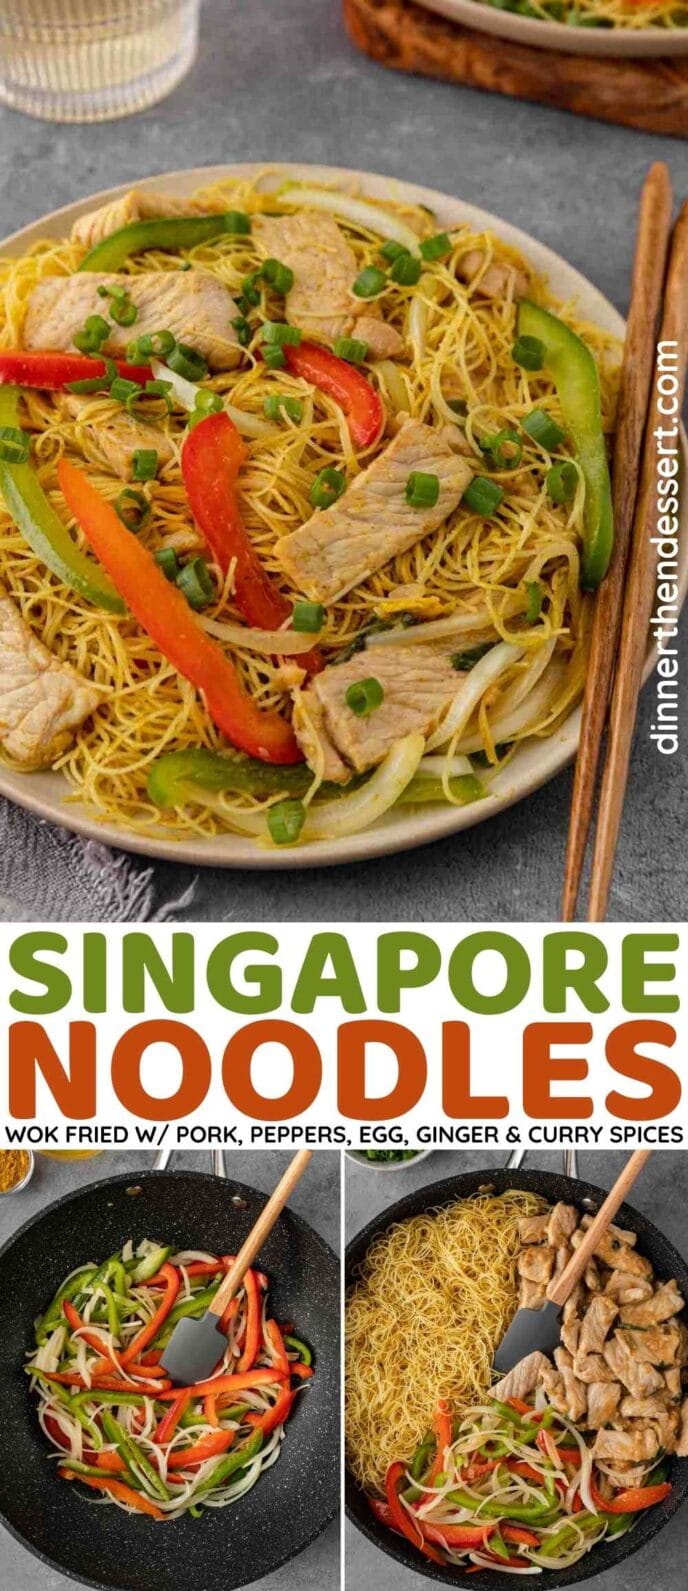 Singapore Noodles Collage